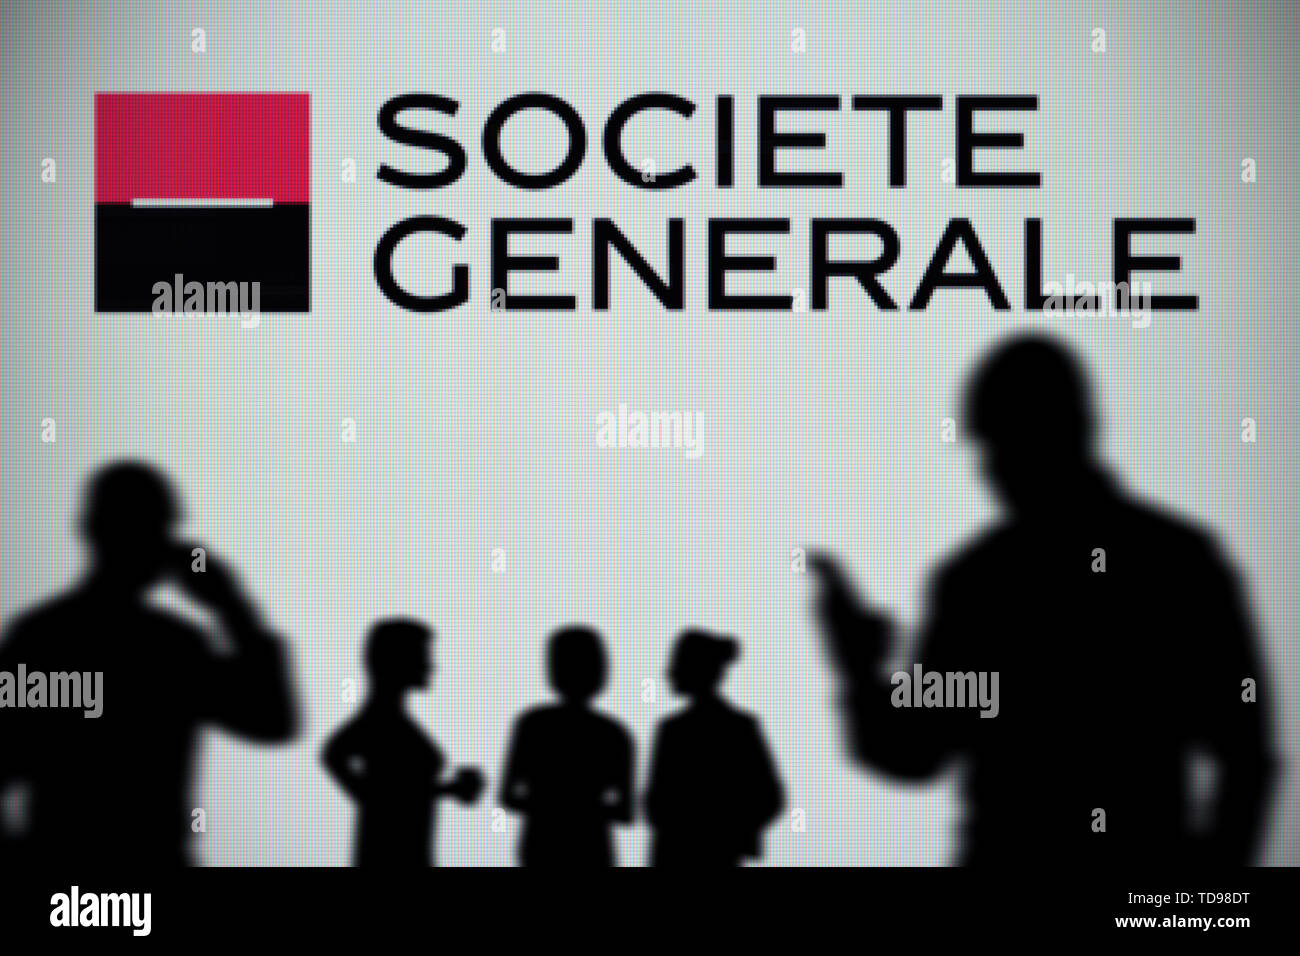 Le logo Société Générale est vu sur un écran LED à l'arrière-plan tandis qu'une silhouette personne utilise un smartphone (usage éditorial uniquement). Banque D'Images